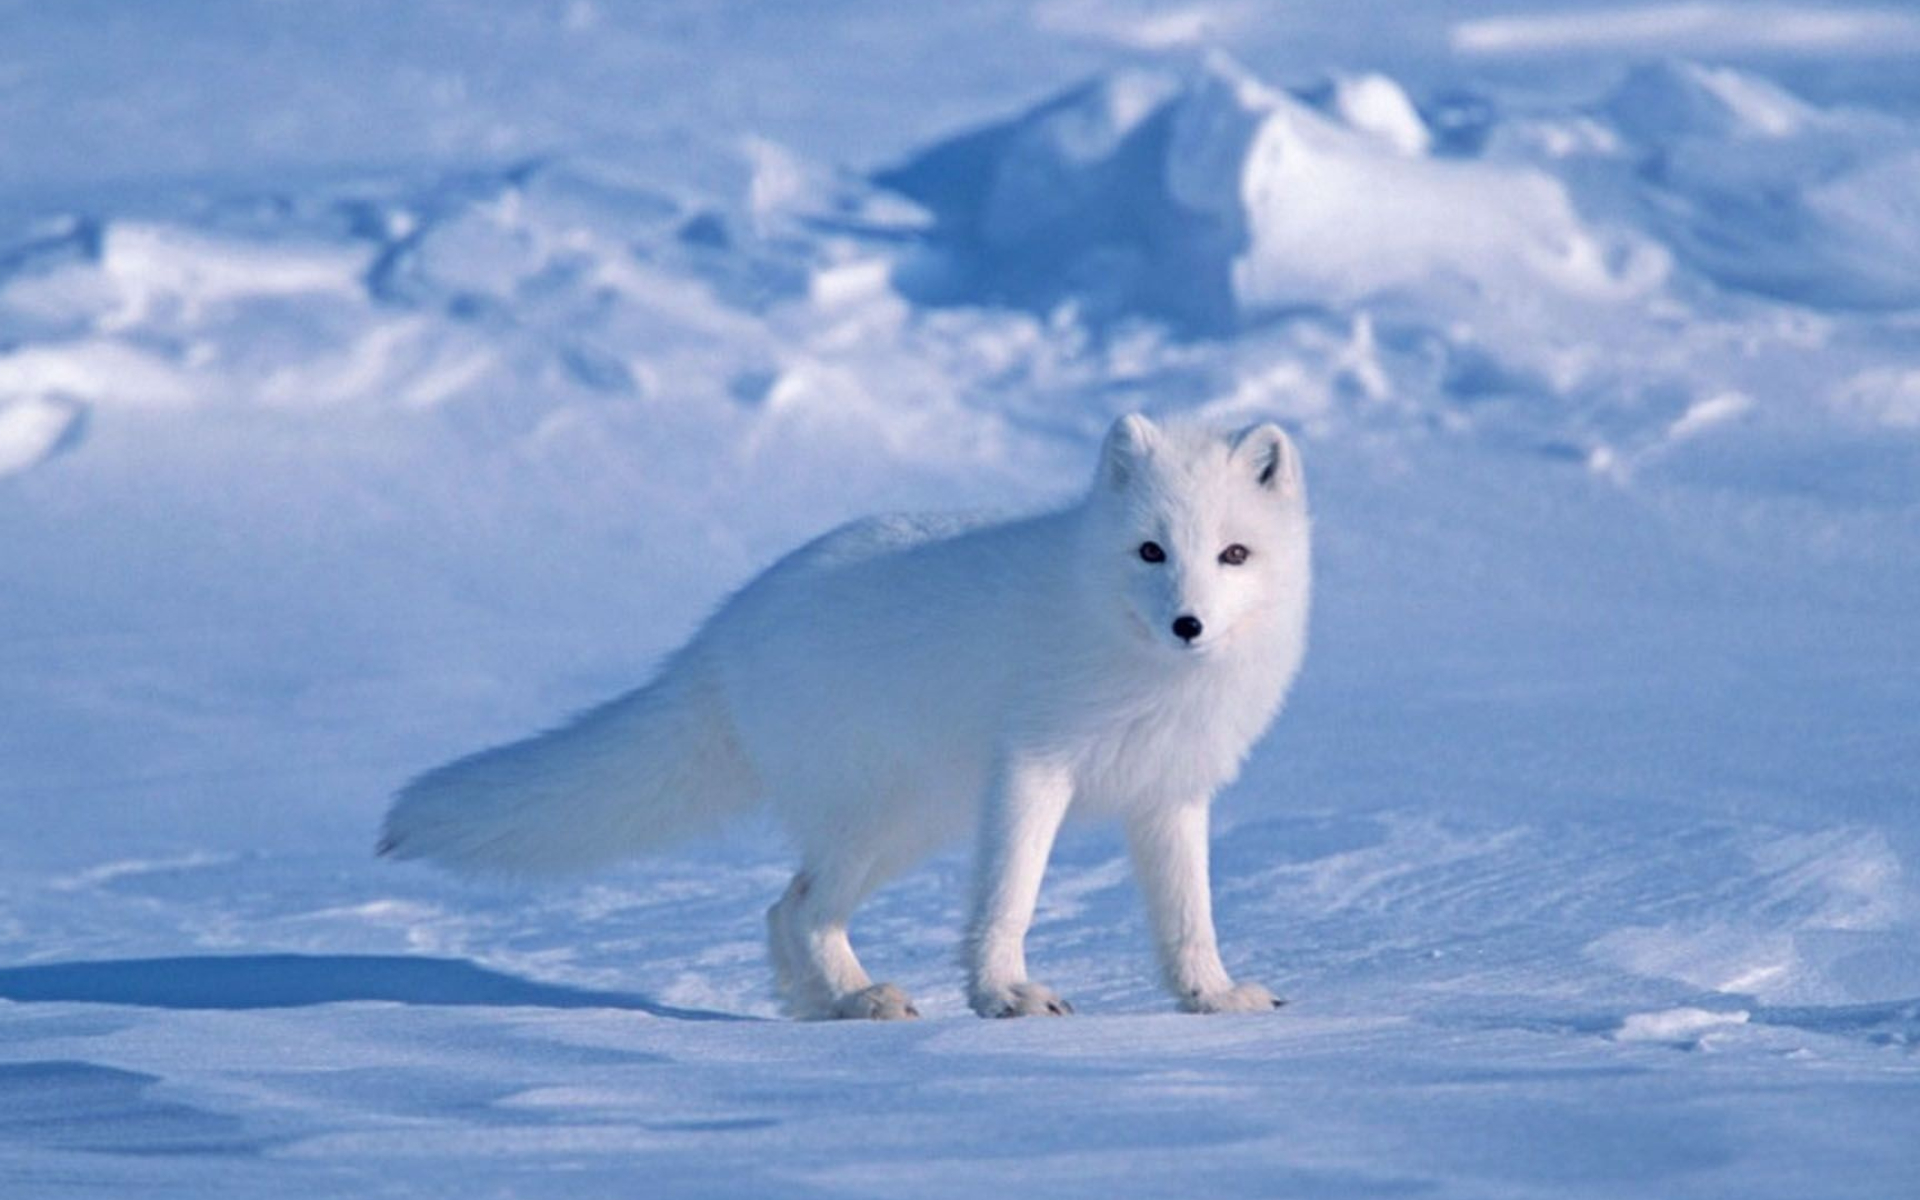 Snowy fox, Breathtaking wallpapers, Winter wonder, Snowy scenes, 1920x1200 HD Desktop